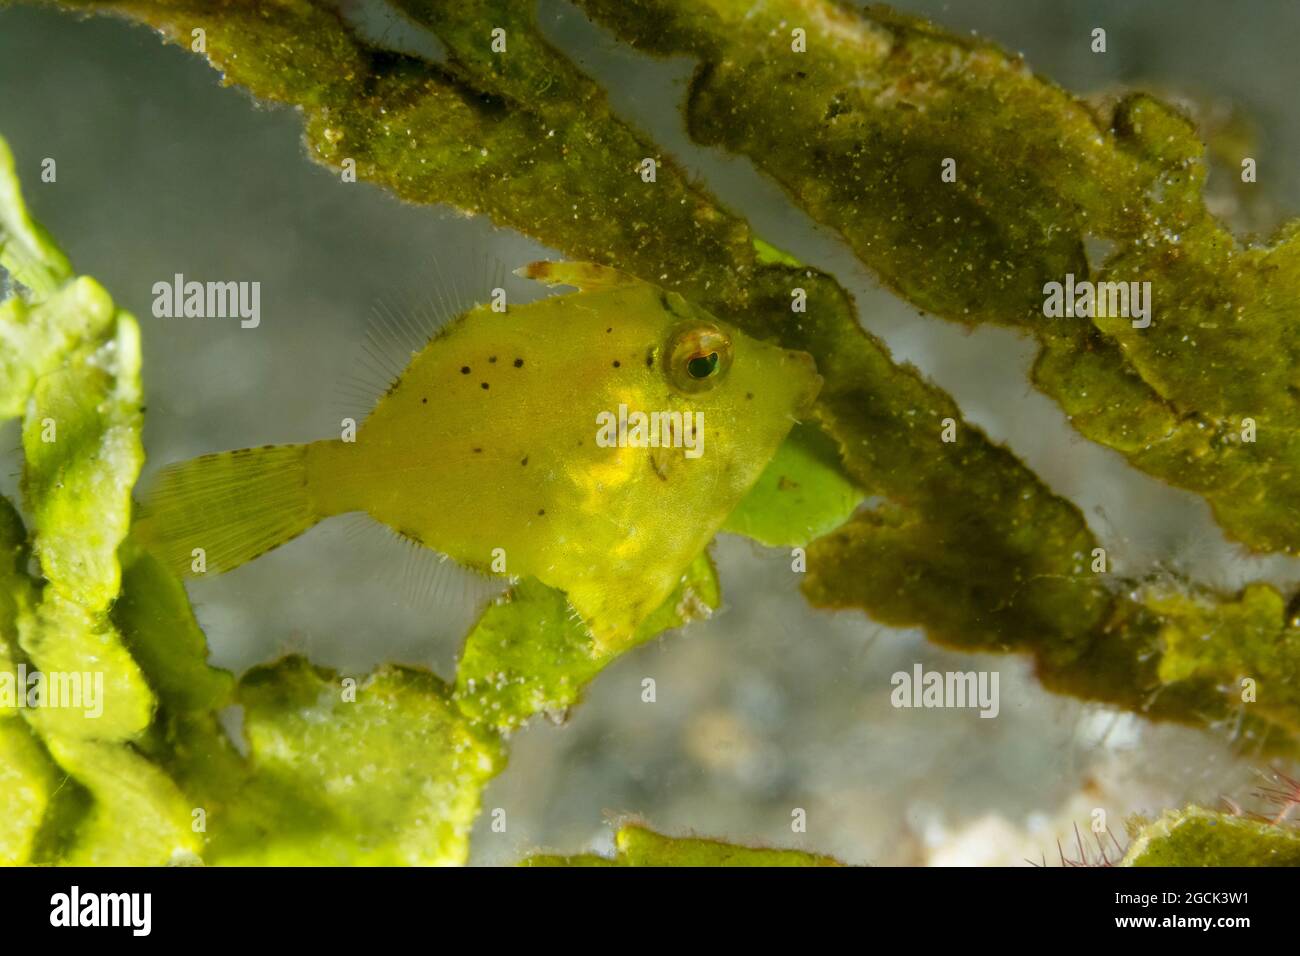 Gros plan d'un petit Acreichthys tomentosus jaune ou d'un corégone en soie nageant parmi les coraux près des fonds marins dans les eaux tropicales Banque D'Images